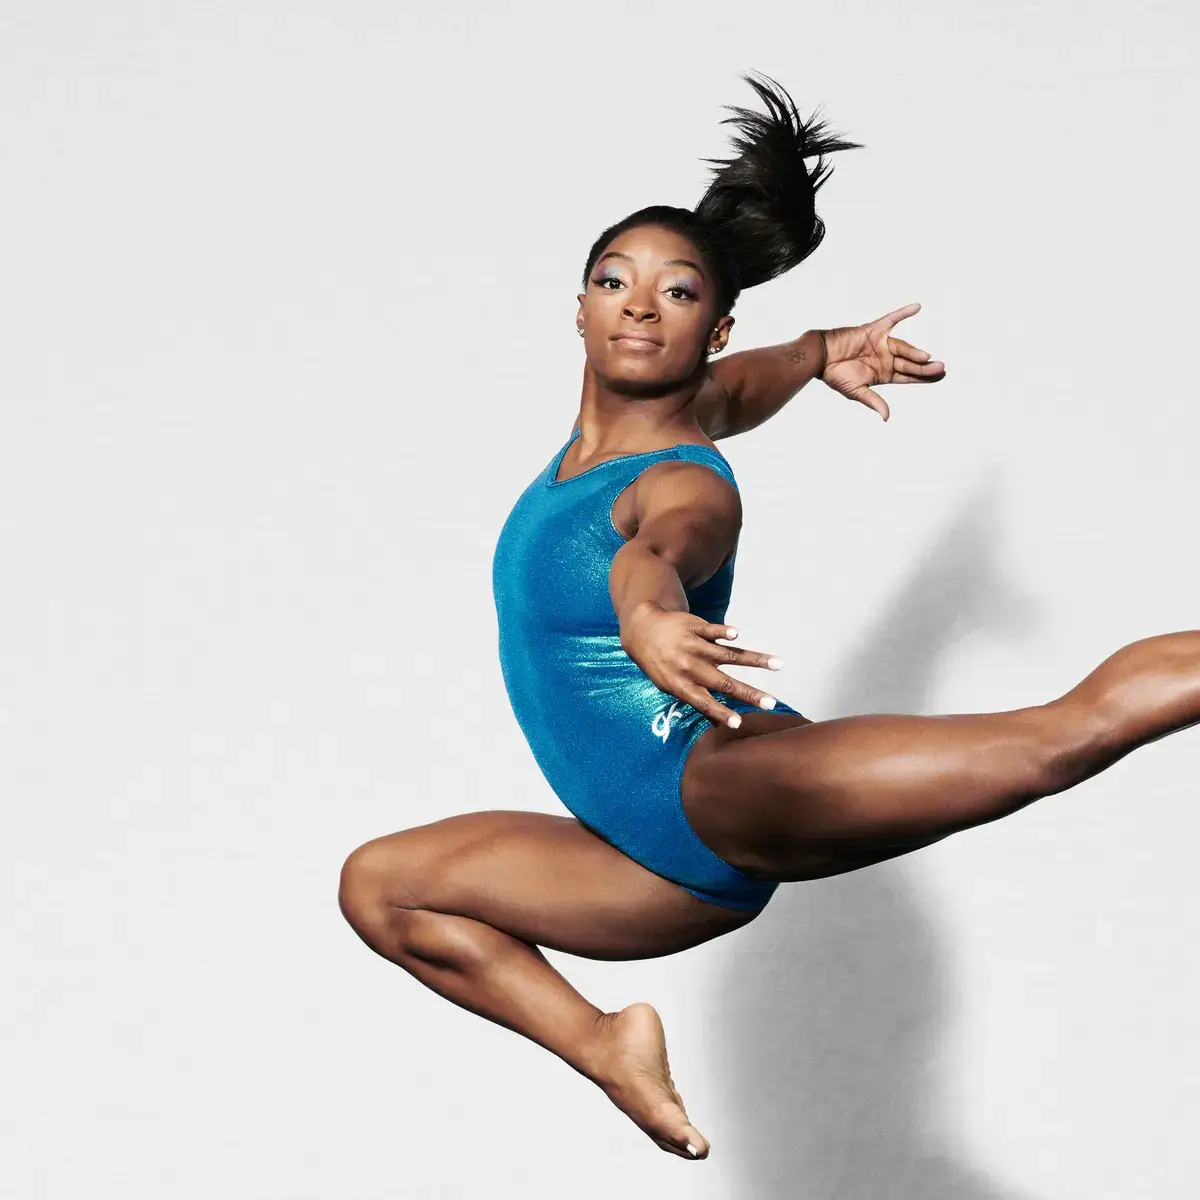 Gwiazda gimnastyki Simone Biles powróci do rywalizacji w sierpniu, po raz pierwszy od Igrzysk Olimpijskich 2020